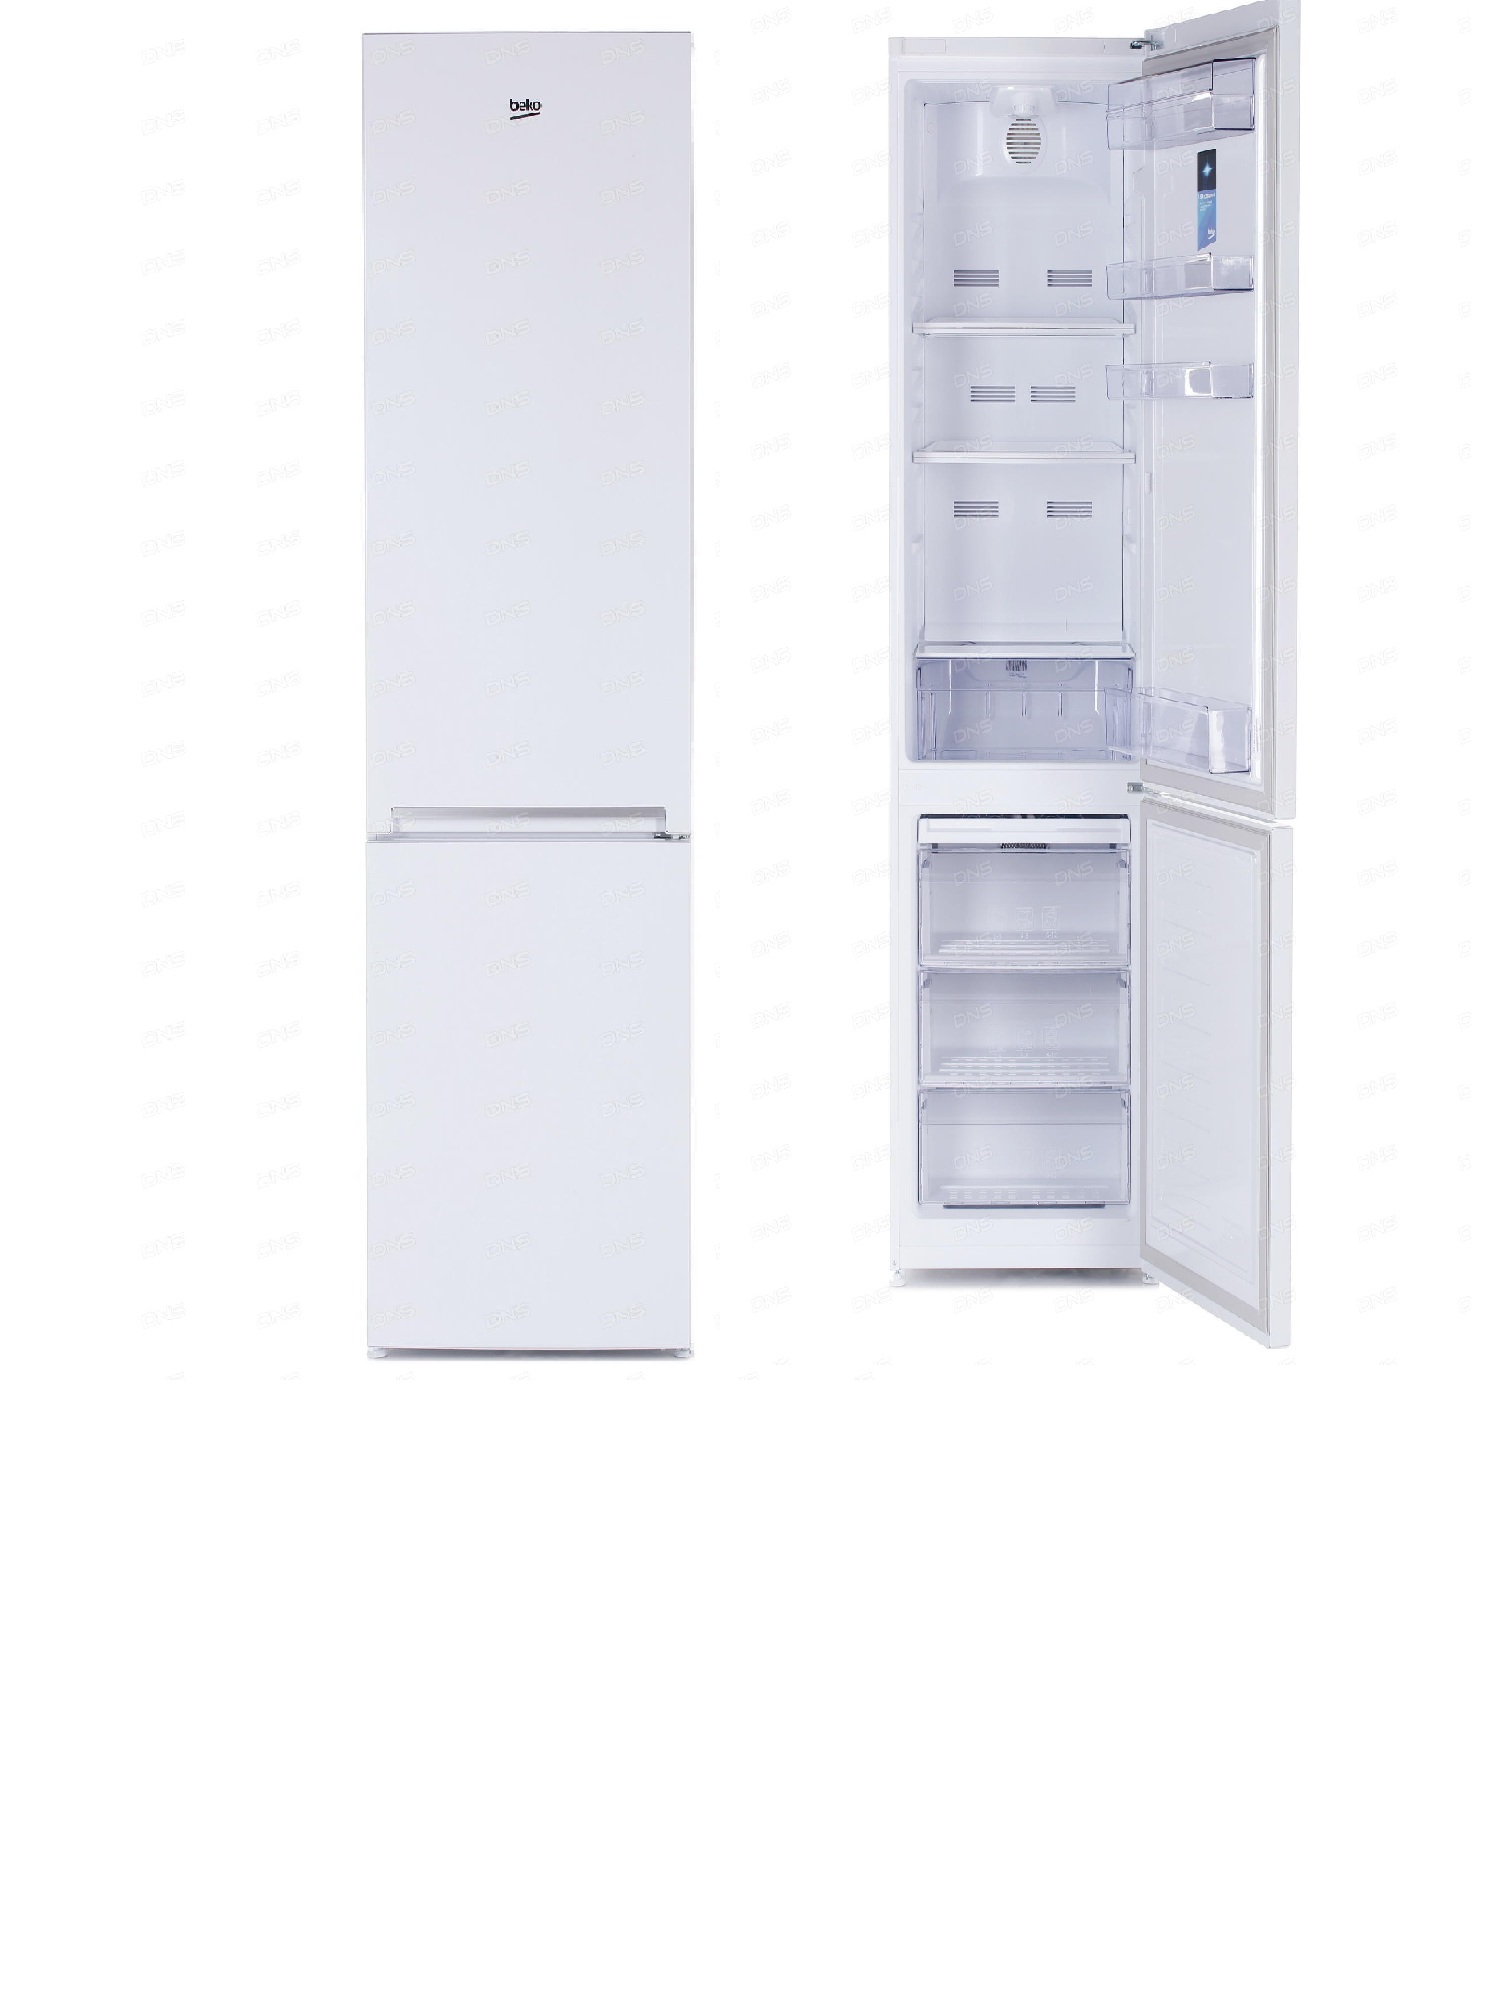 холодильник beko rcnk355k00w, купить в Красноярске холодильник beko rcnk355k00w,  купить в Красноярске дешево холодильник beko rcnk355k00w, купить в Красноярске минимальной цене холодильник beko rcnk355k00w